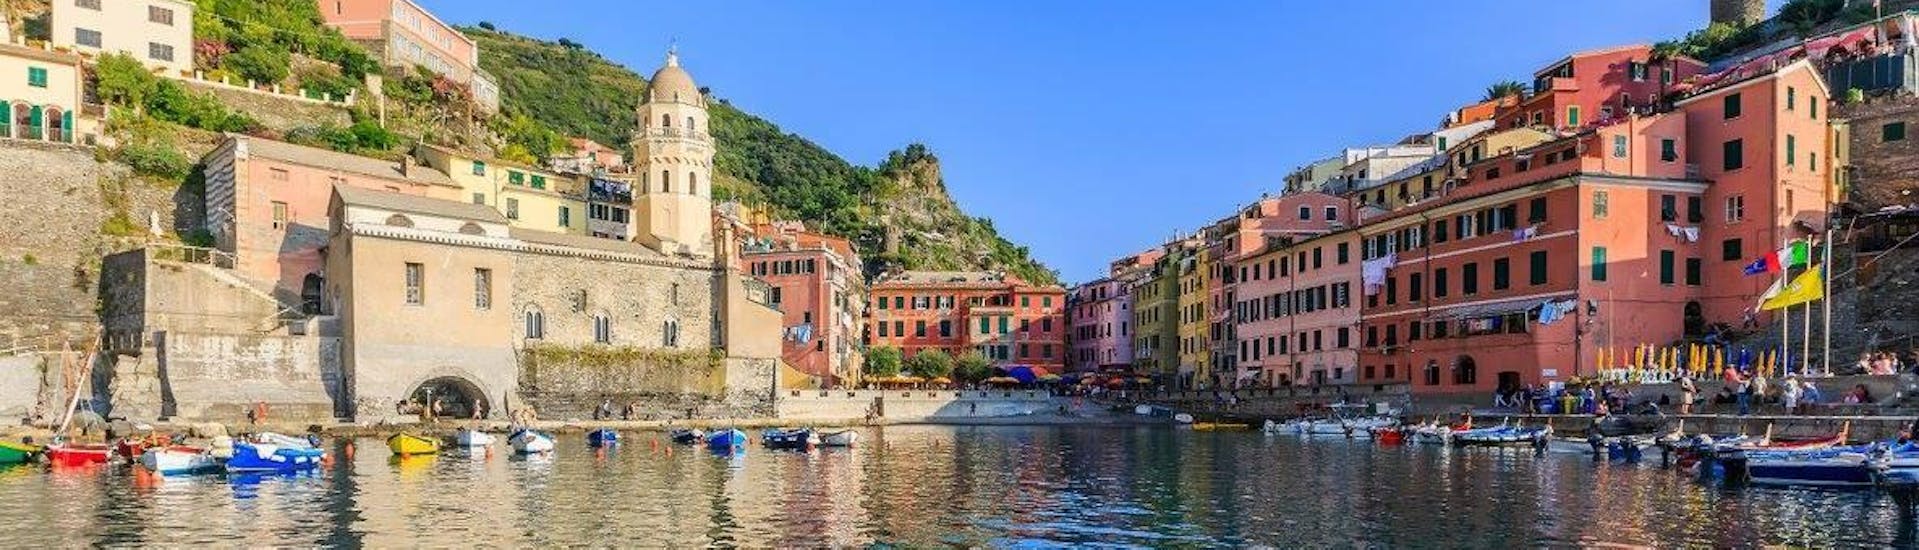 La increíble vista de Vernazza durante el viaje en barco desde Levanto a Cinque Terre y Porto Venere con Costa di Faraggiana Levanto.